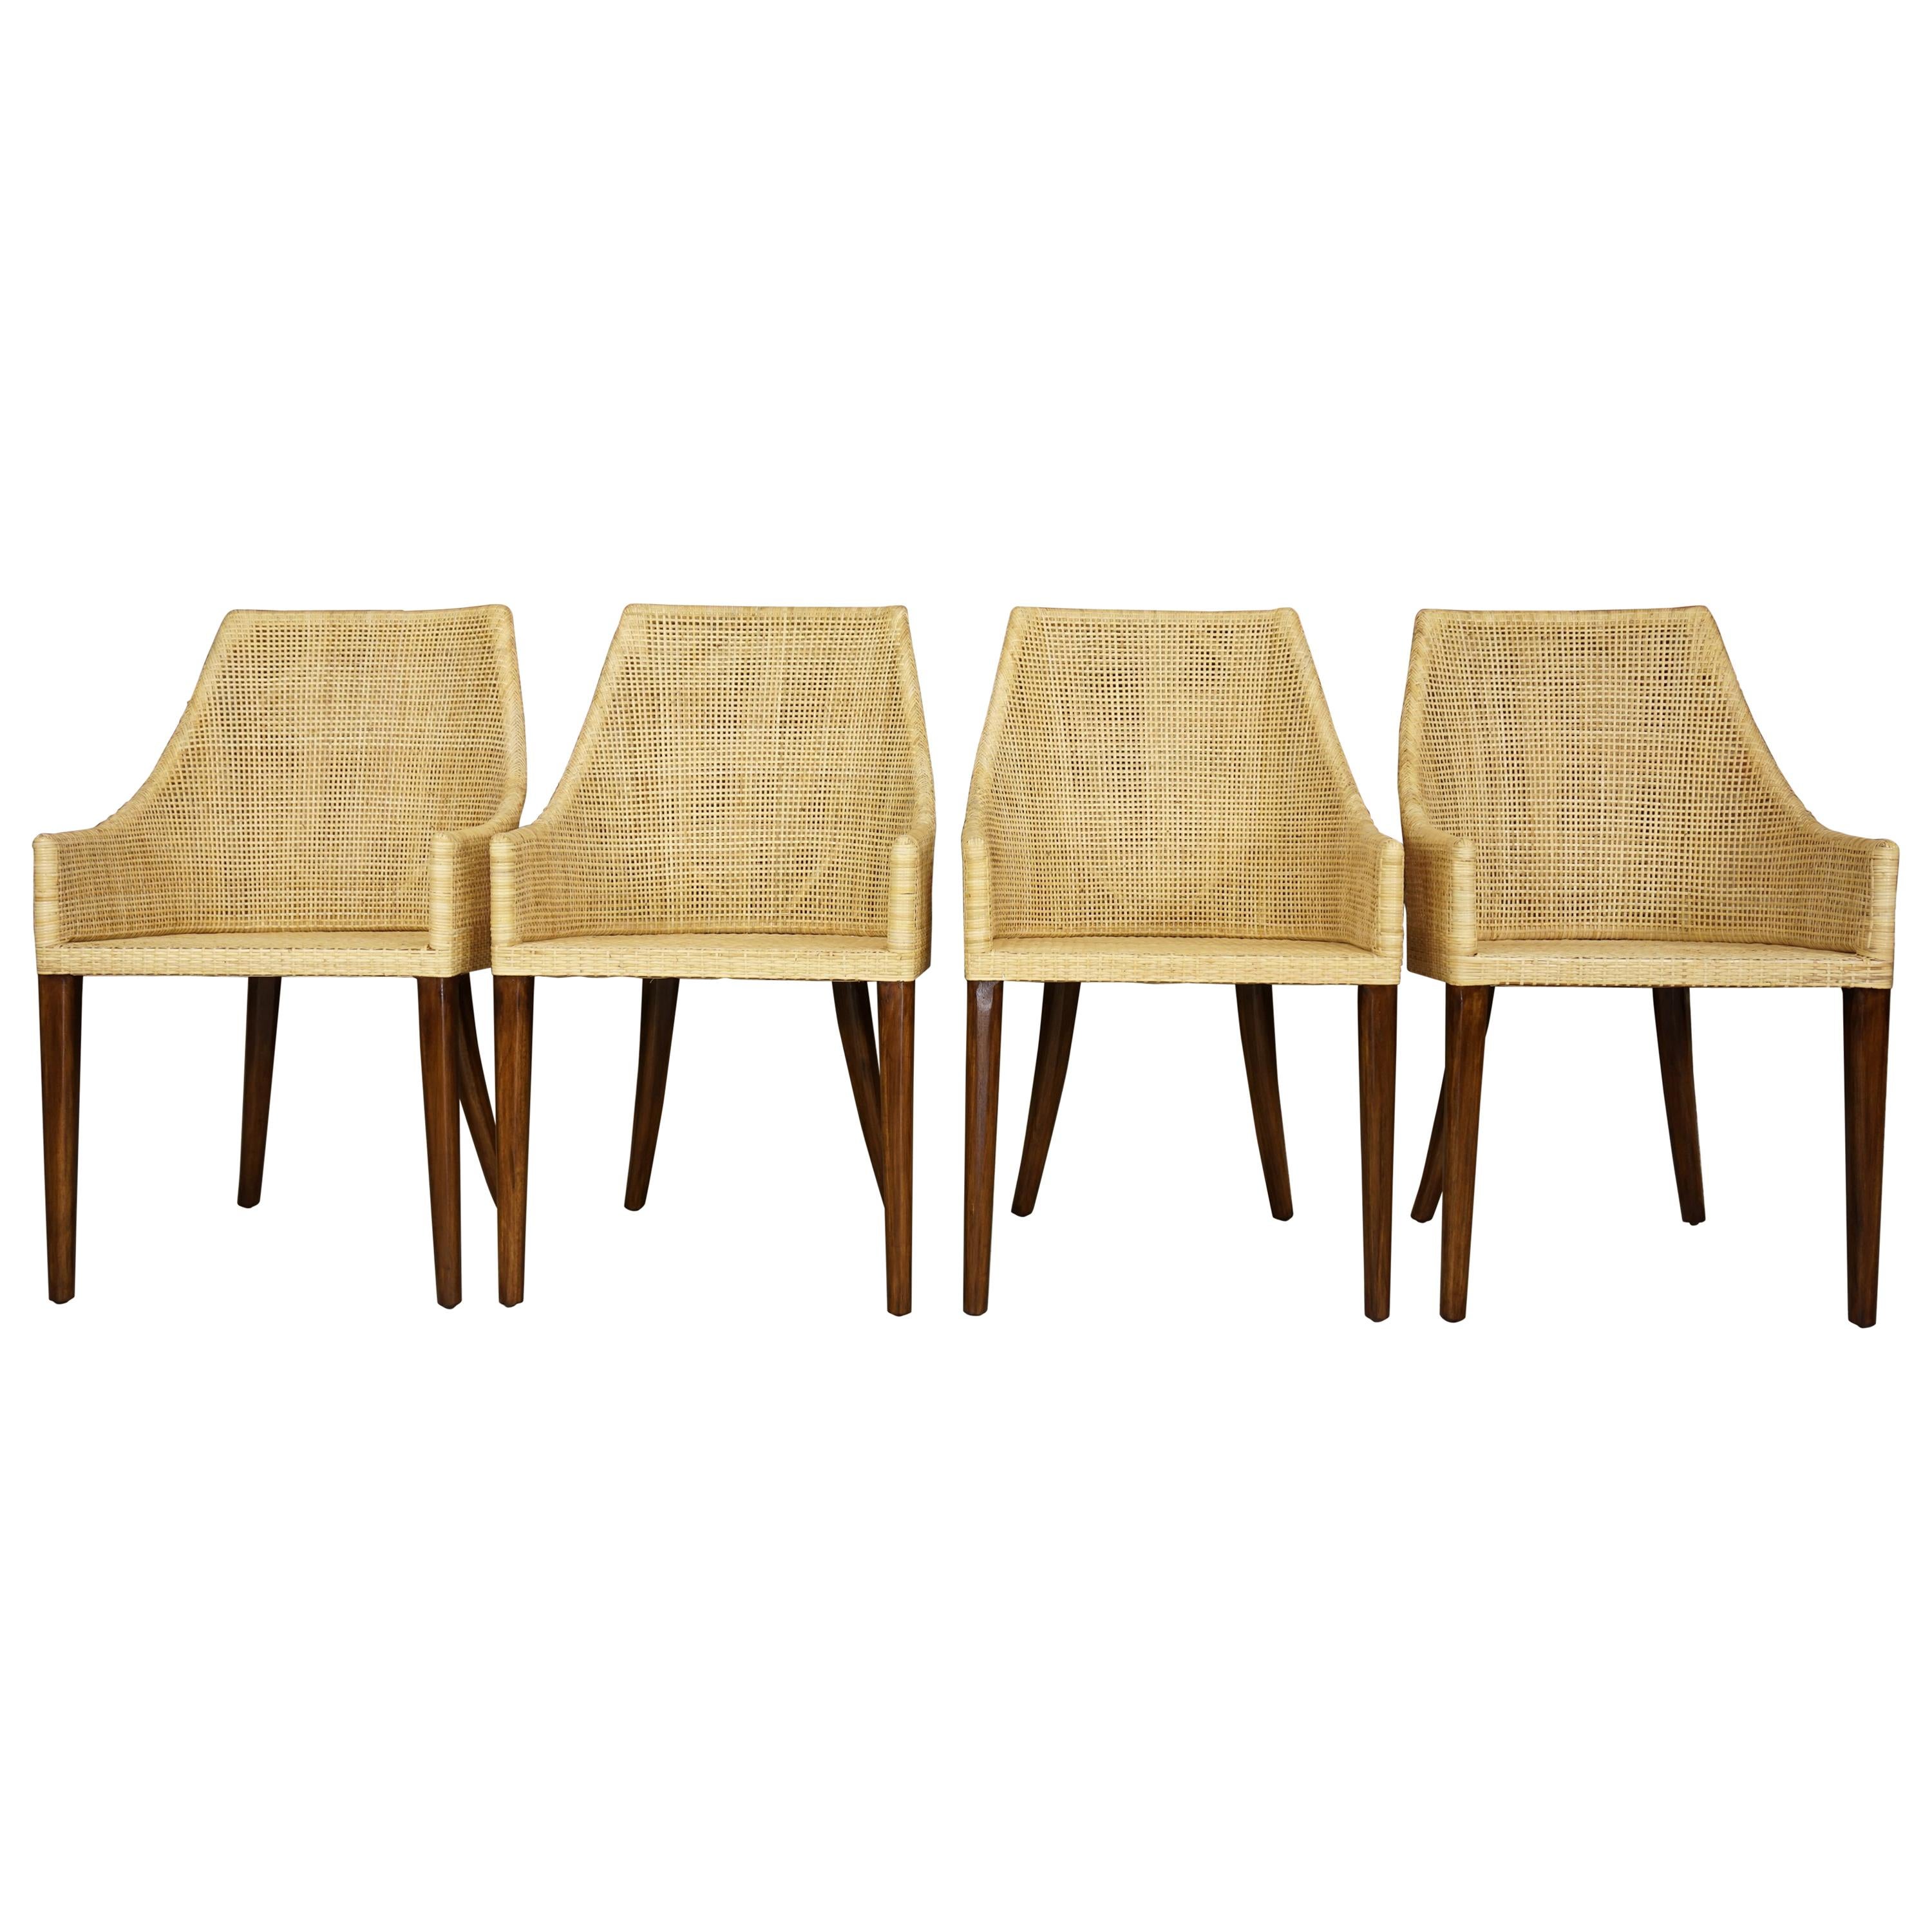 Elegant ensemble de 4 fauteuils de salle à manger avec pieds en bois massif et rotin tressé alliant qualité, robustesse et classe. Ils seront parfaits sur votre terrasse, dans votre véranda, dans votre jardin d'hiver, autour de la table à manger et